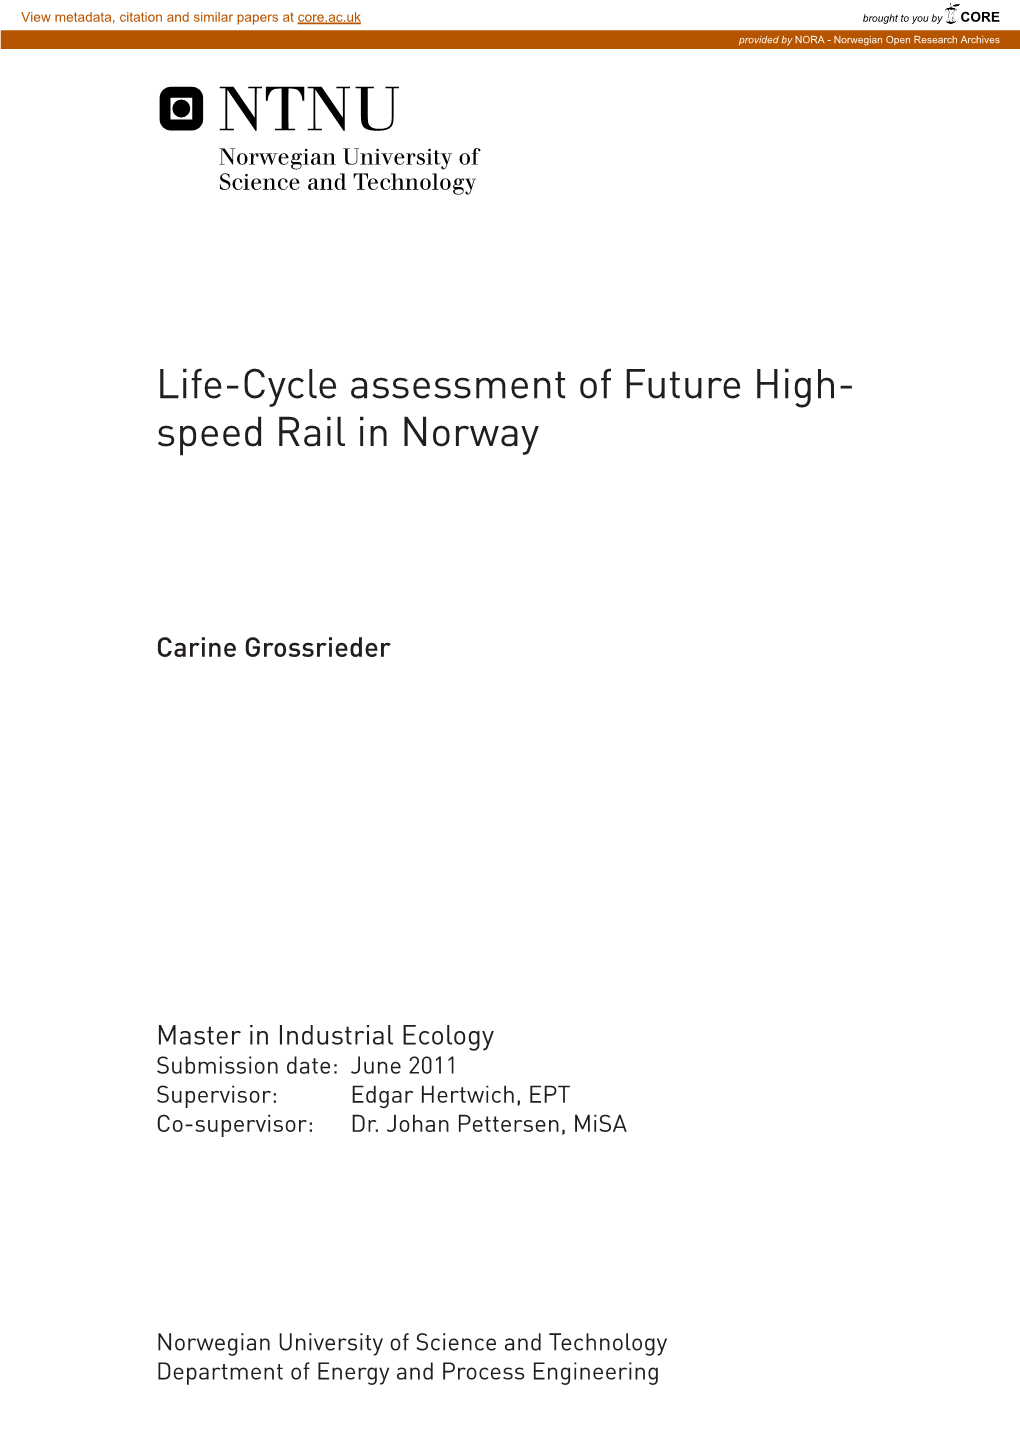 Life-Cycle Assessment of Future High-Speed Rail in Norway Livssyklusvurdering Av Høyhastighetstog I Norge